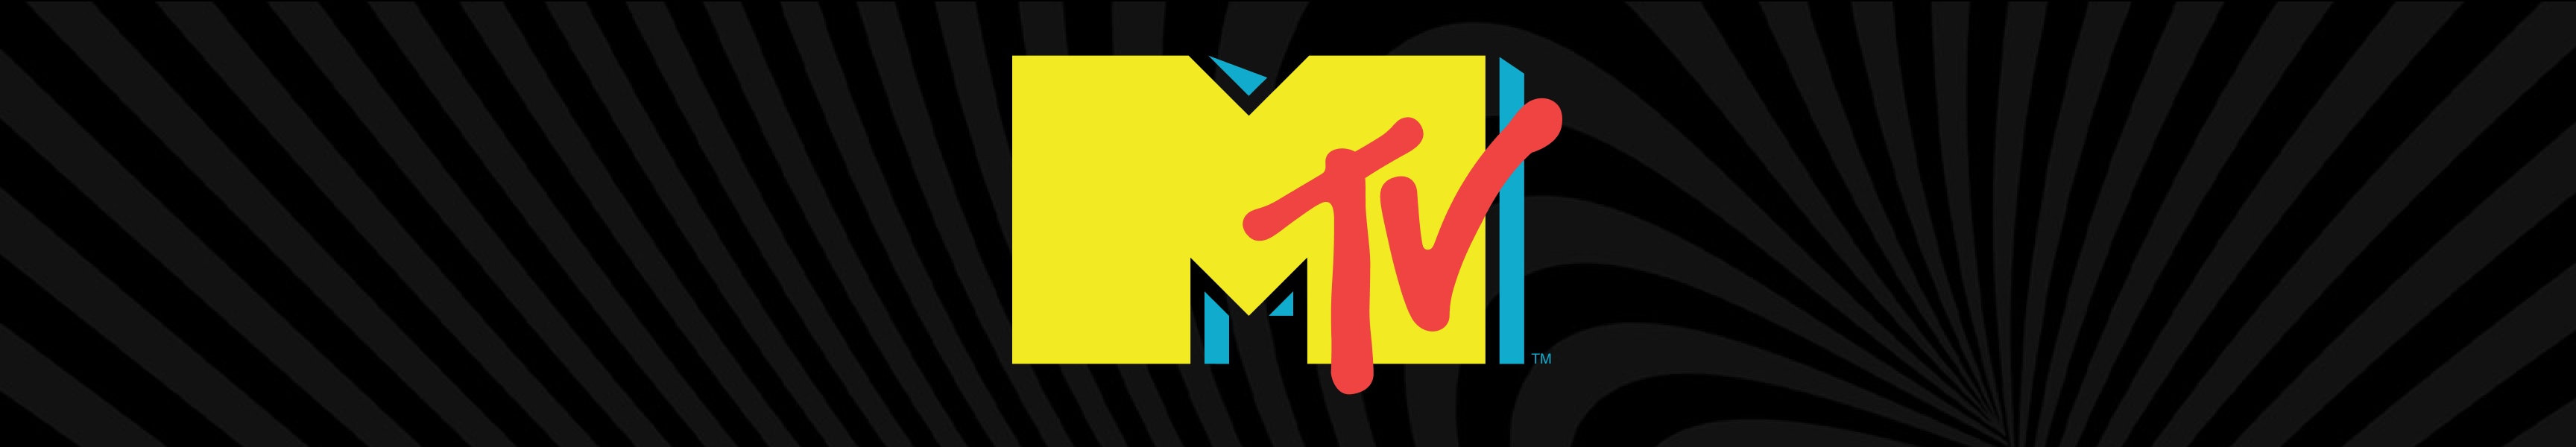 MTV Wall Art